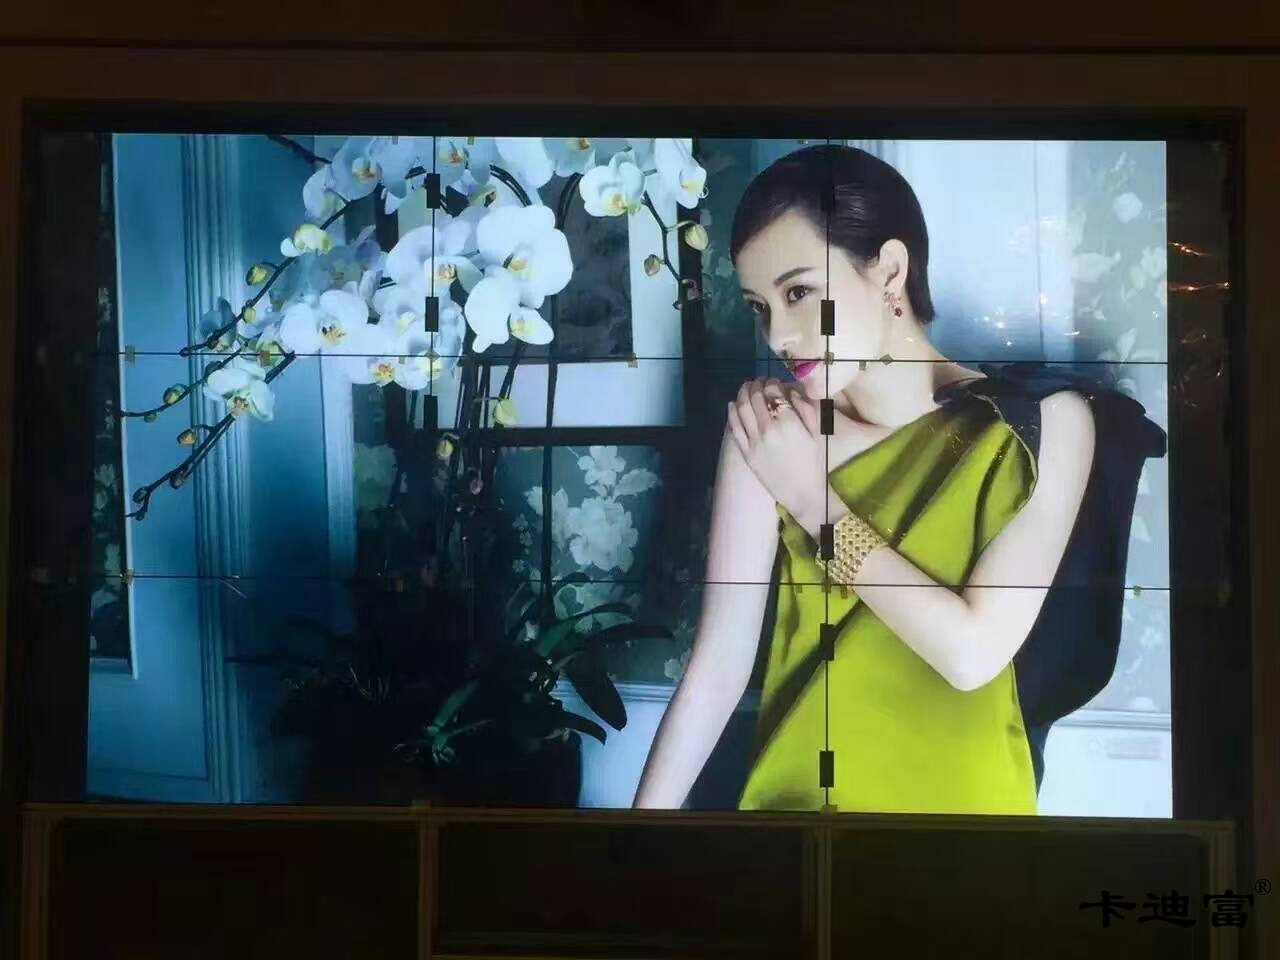 深圳拼接屏之娱乐场所4K拼接屏展示案例